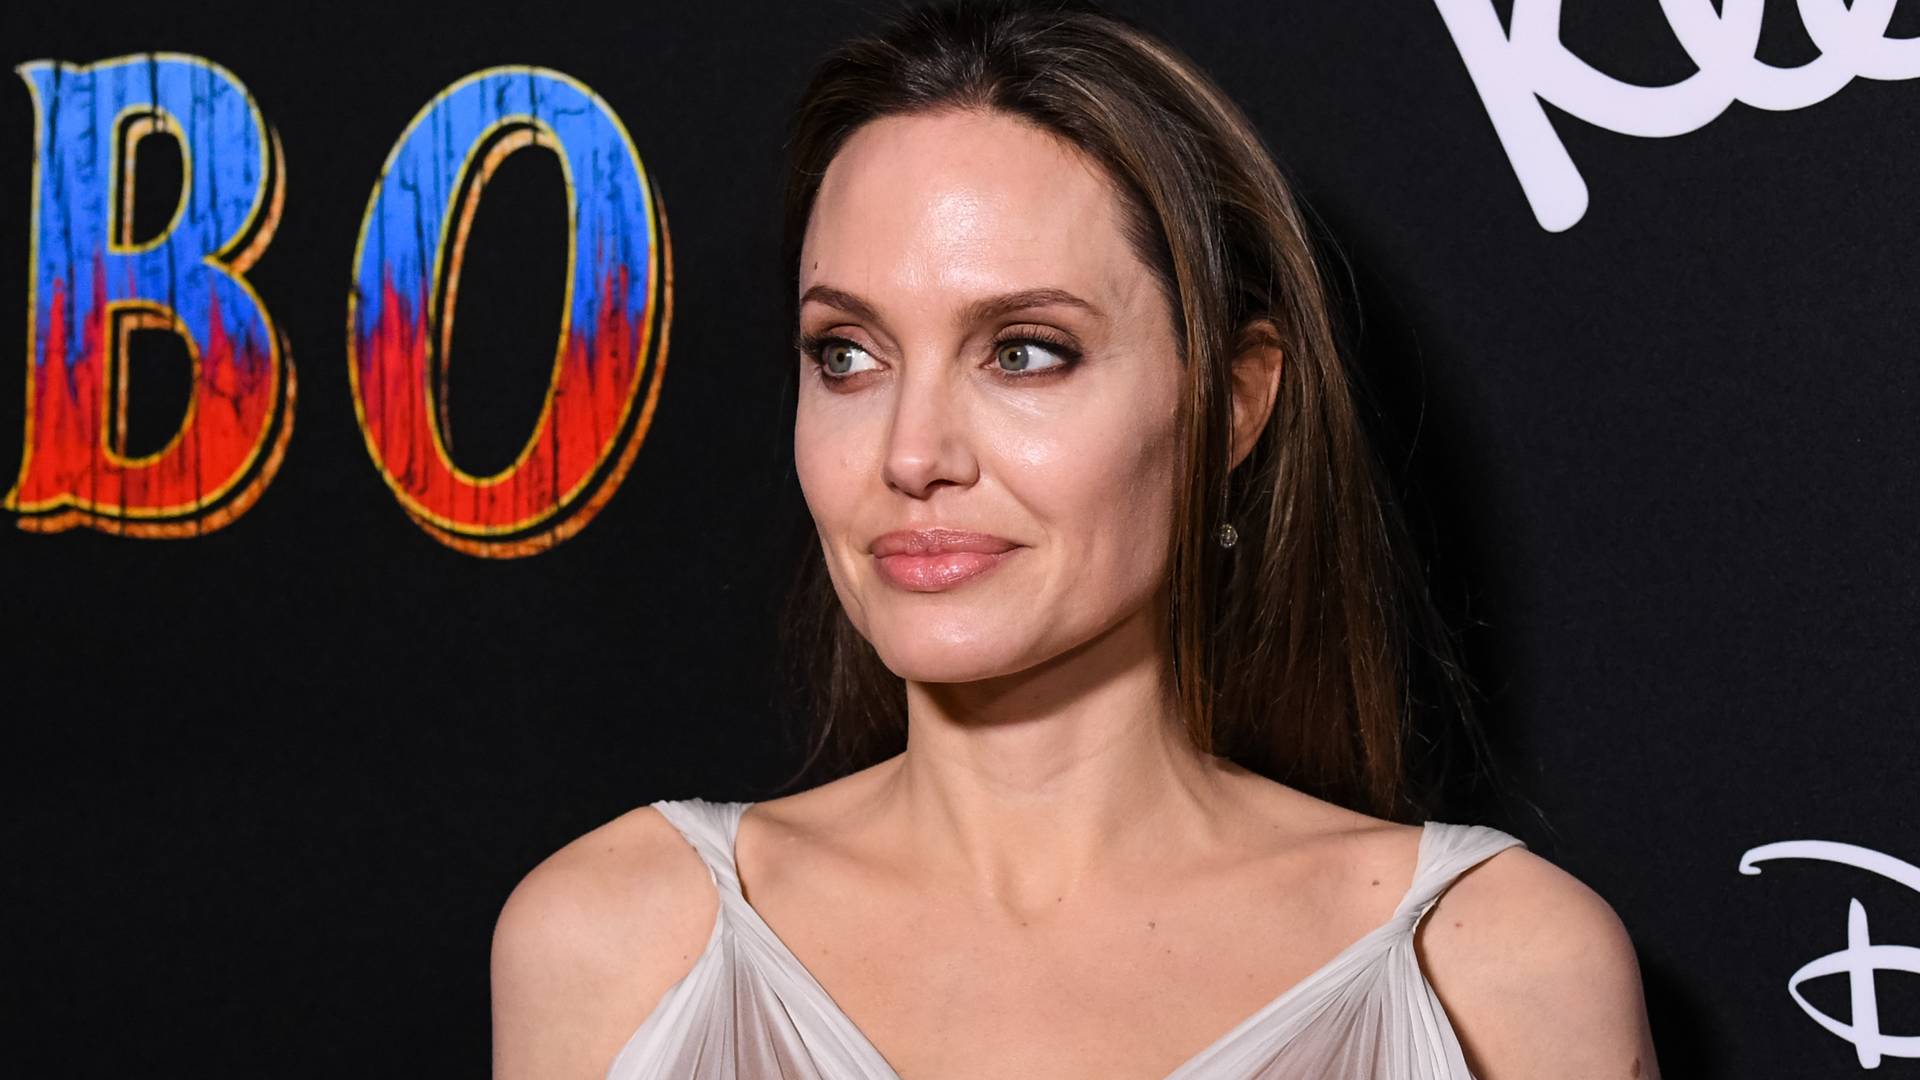 “Gdybym żyła parę wieków wcześniej, spalono by mnie na stosie” - wyznanie Angeliny Jolie